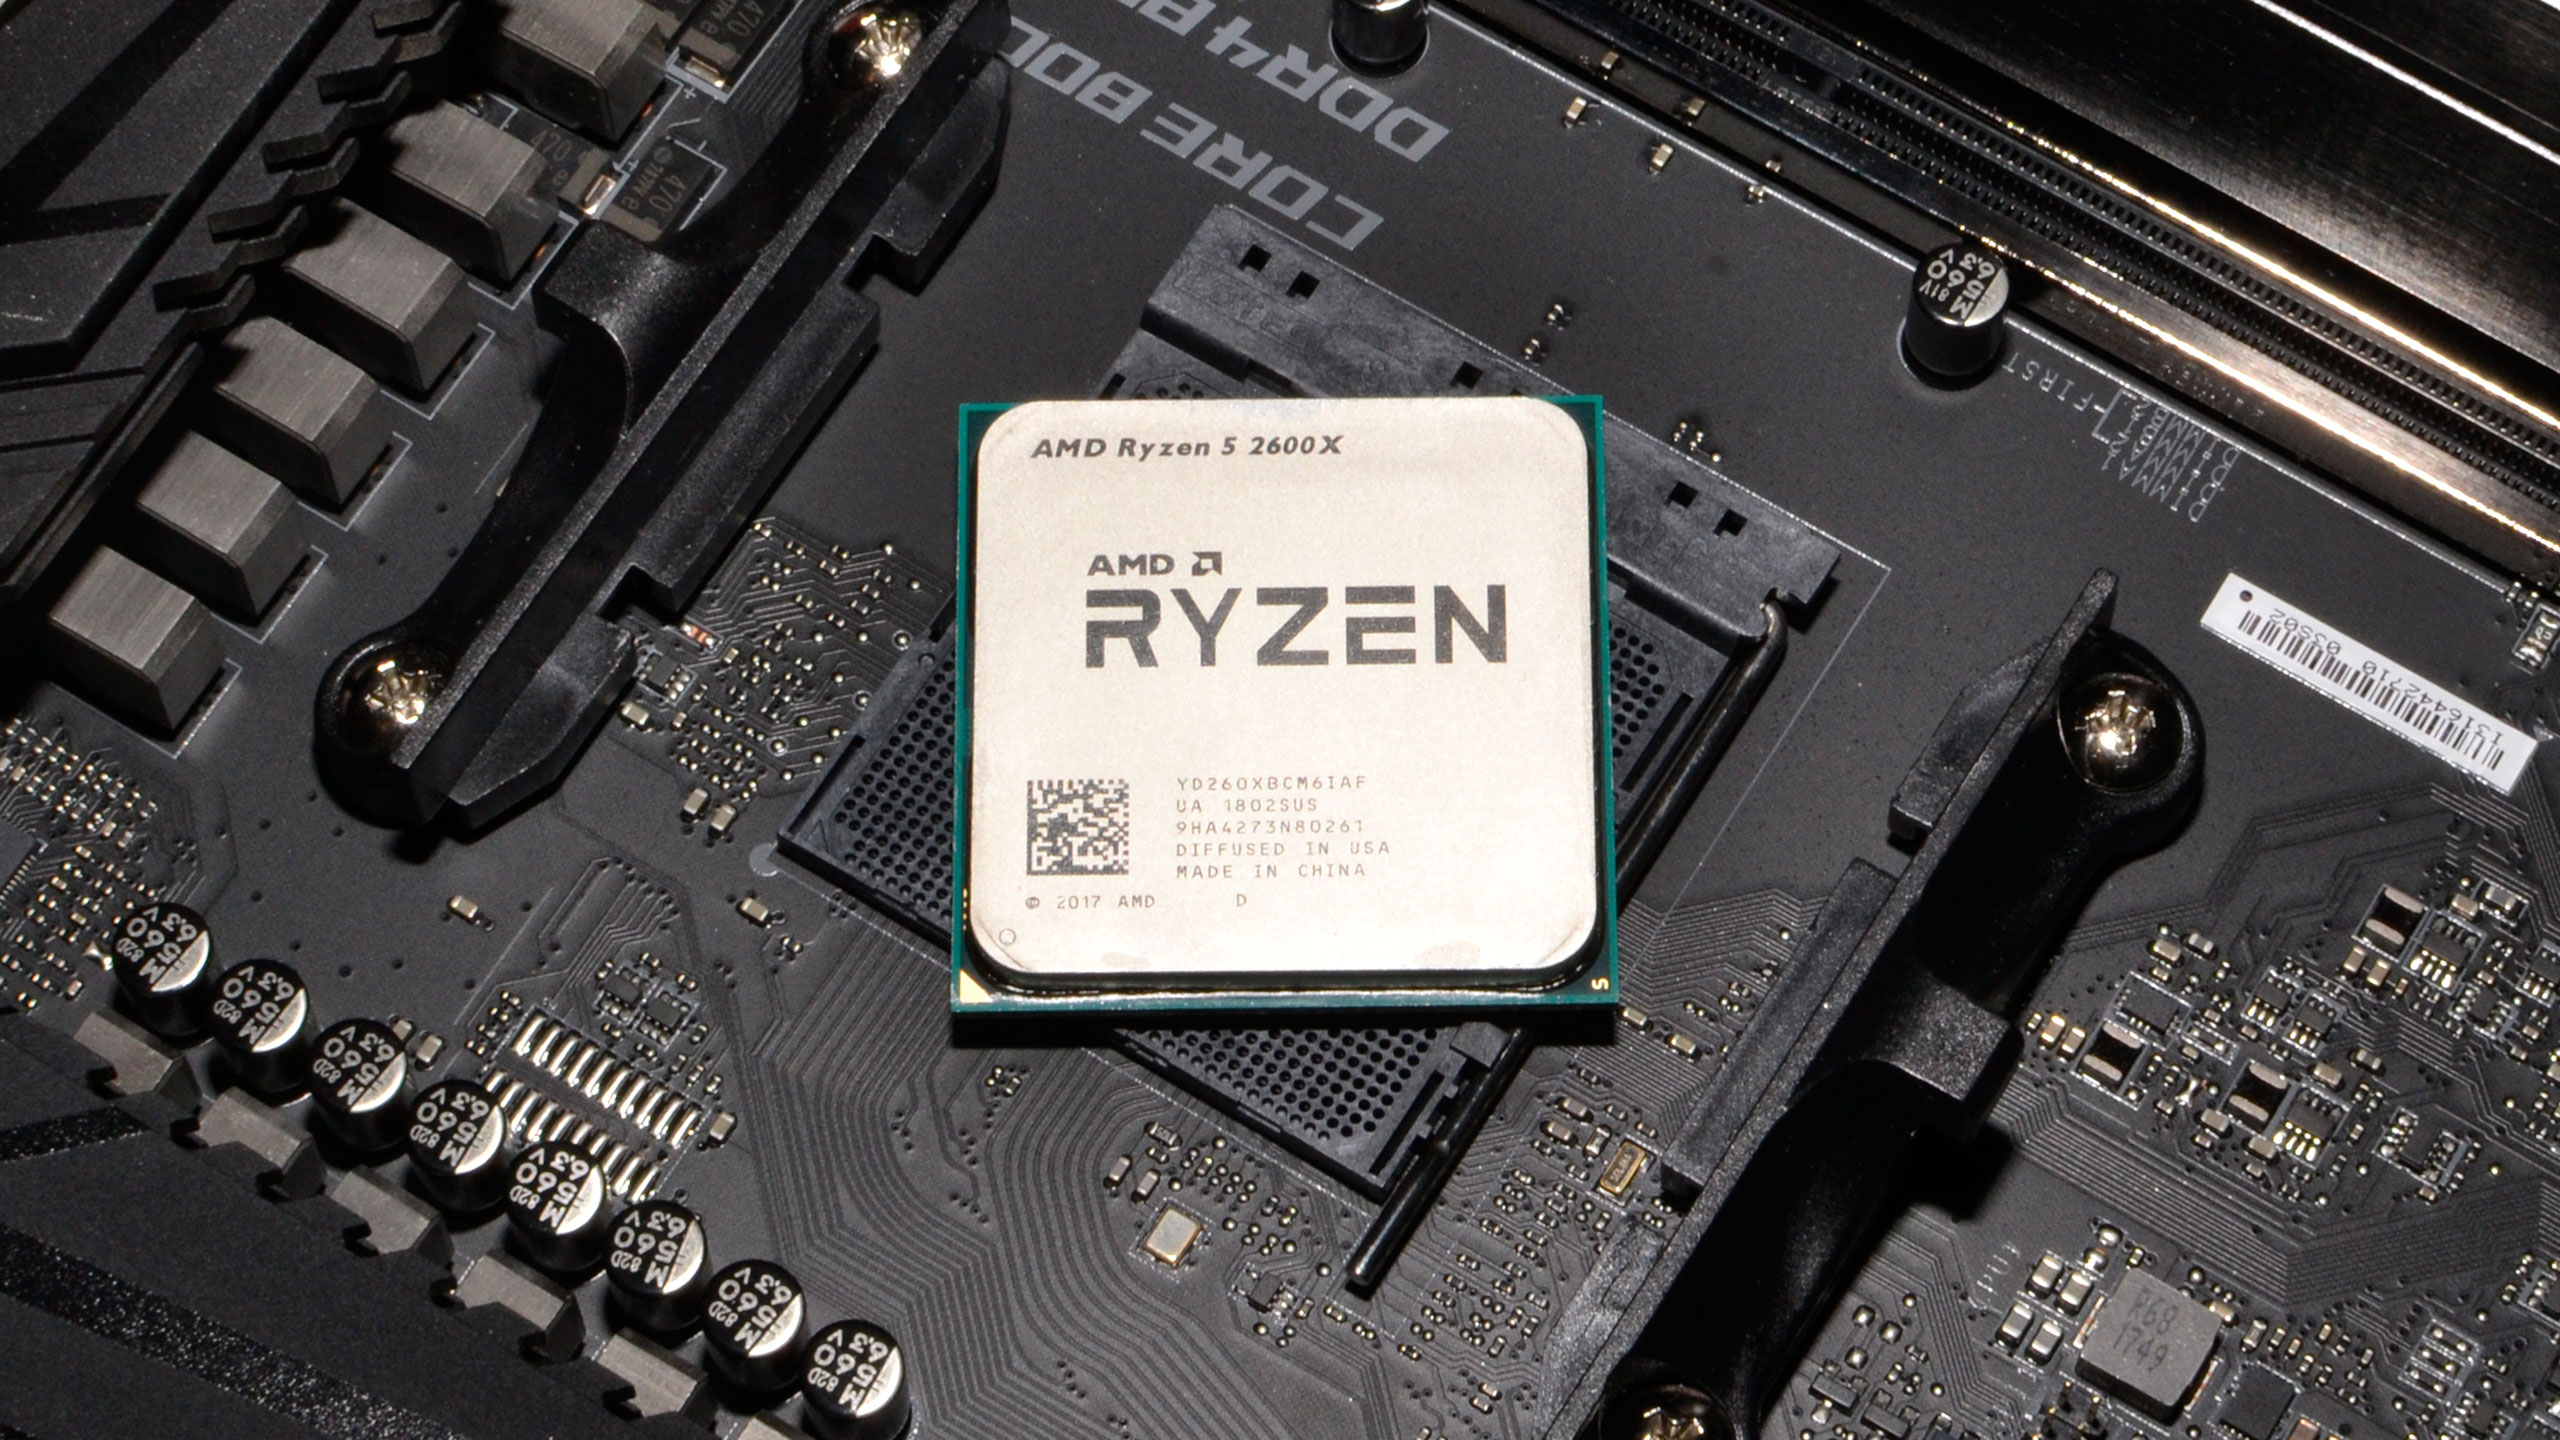 5 5600 сокет. Ryzen 2600x. AMD Ryzen 5 2600x. AMD 5 2600. Процессор AMD Ryzen 5 2600 am4.